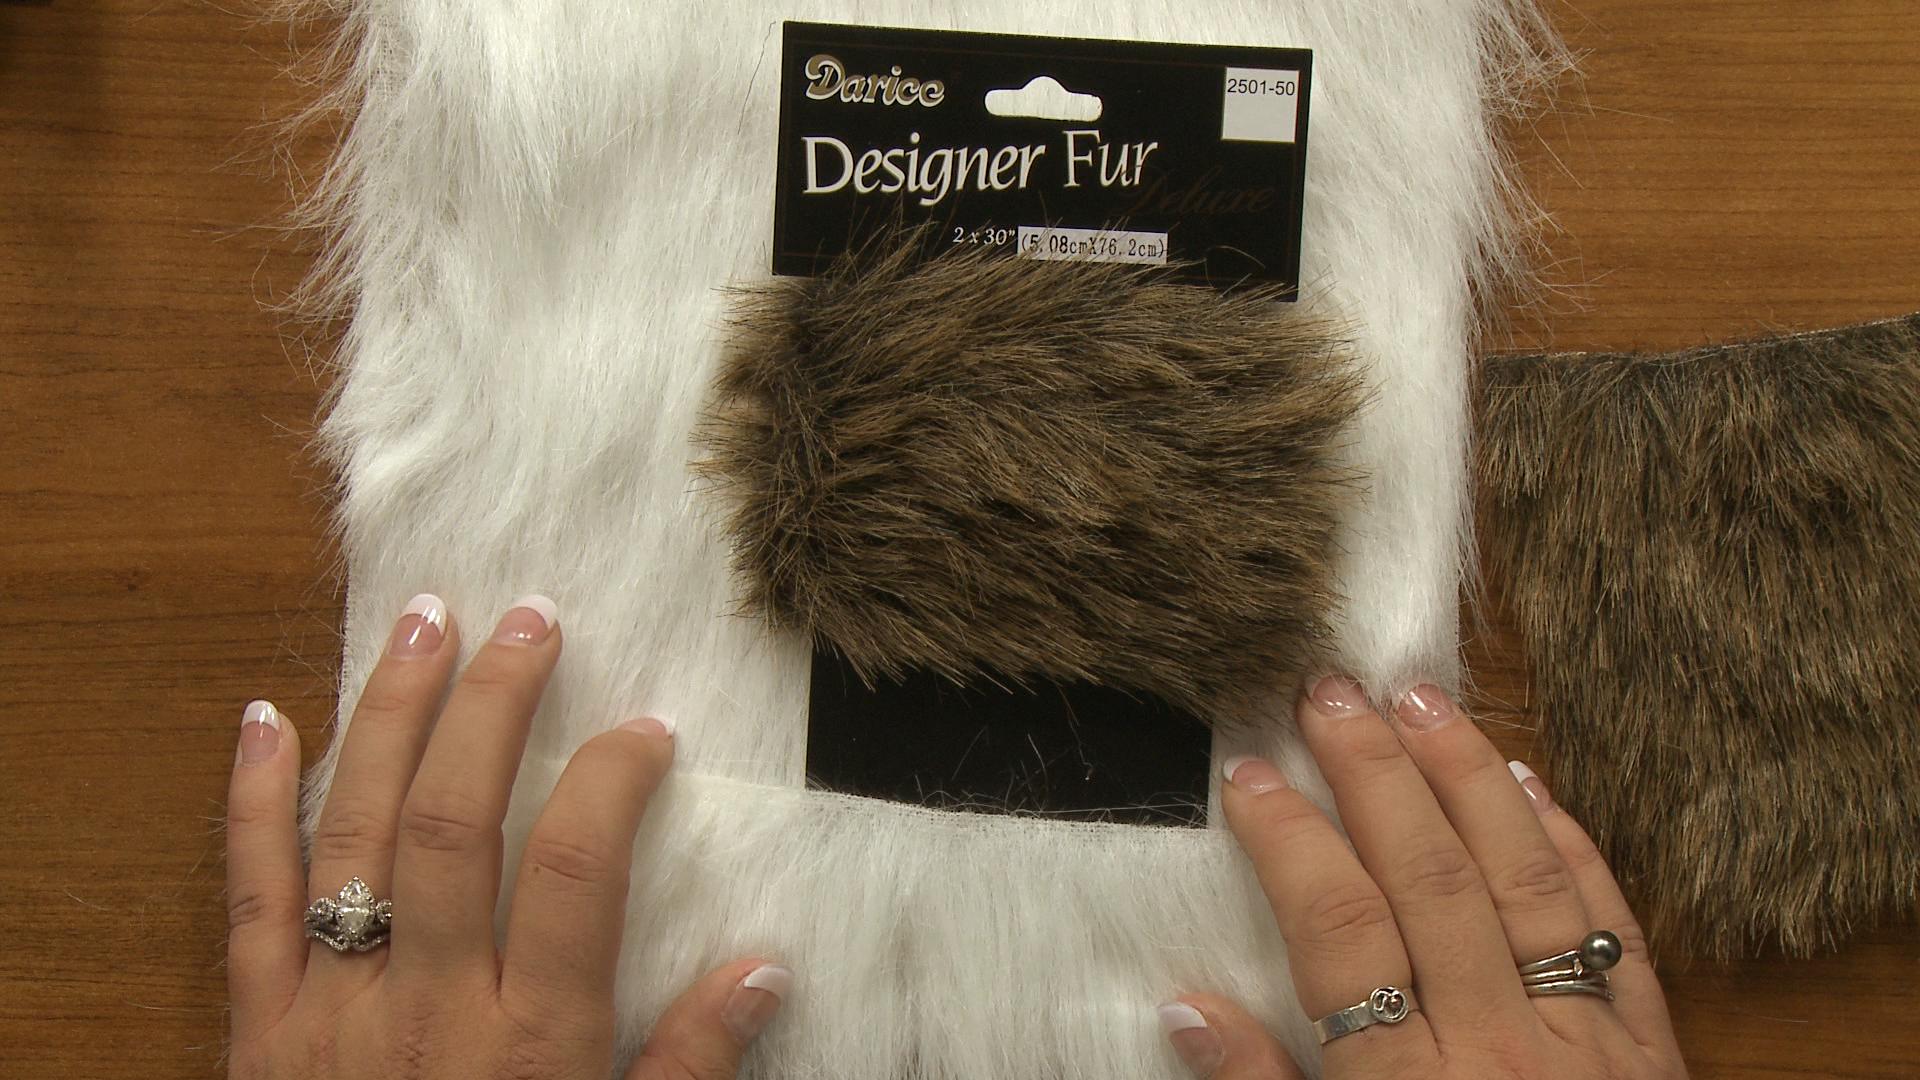 Session 2: Faux Fur & Leather